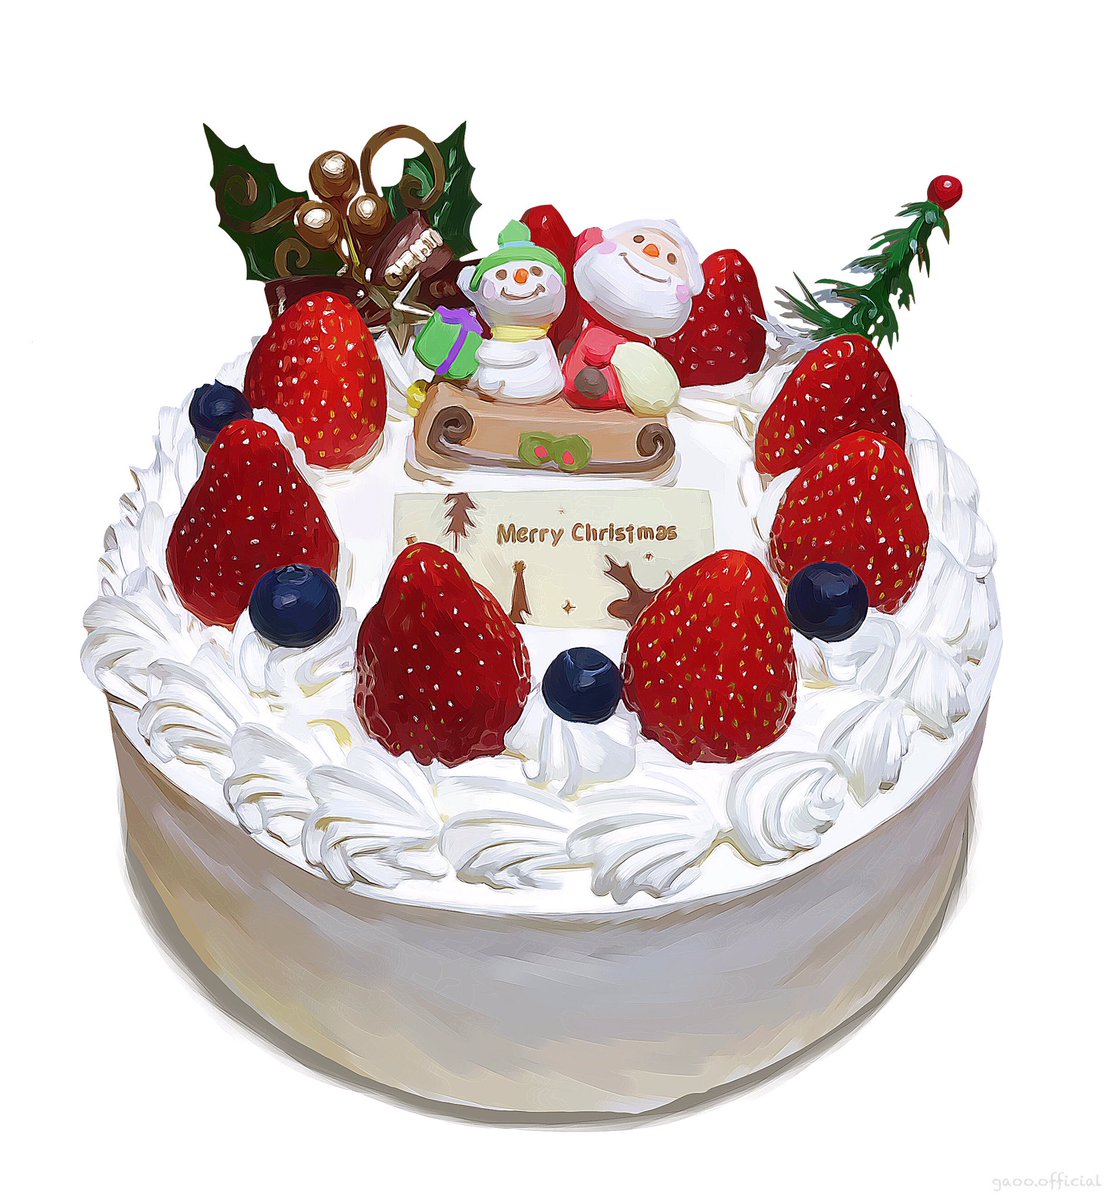 「クリスマスケーキの質感描いた絵 」|Gaooのイラスト